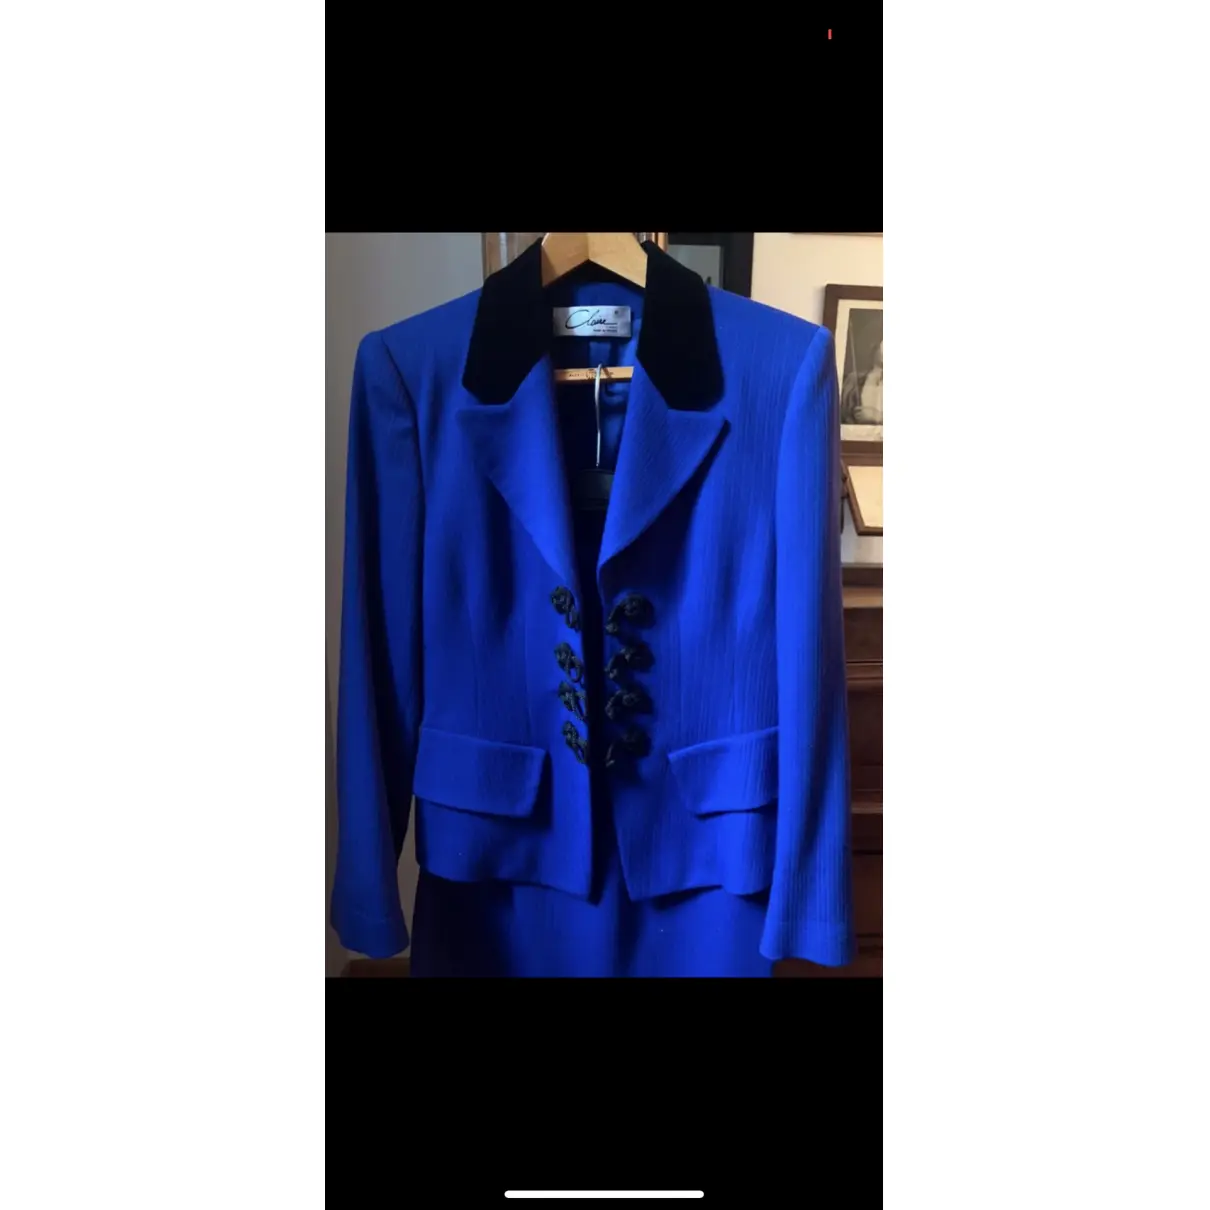 Buy Claire Paris Wool suit jacket online - Vintage